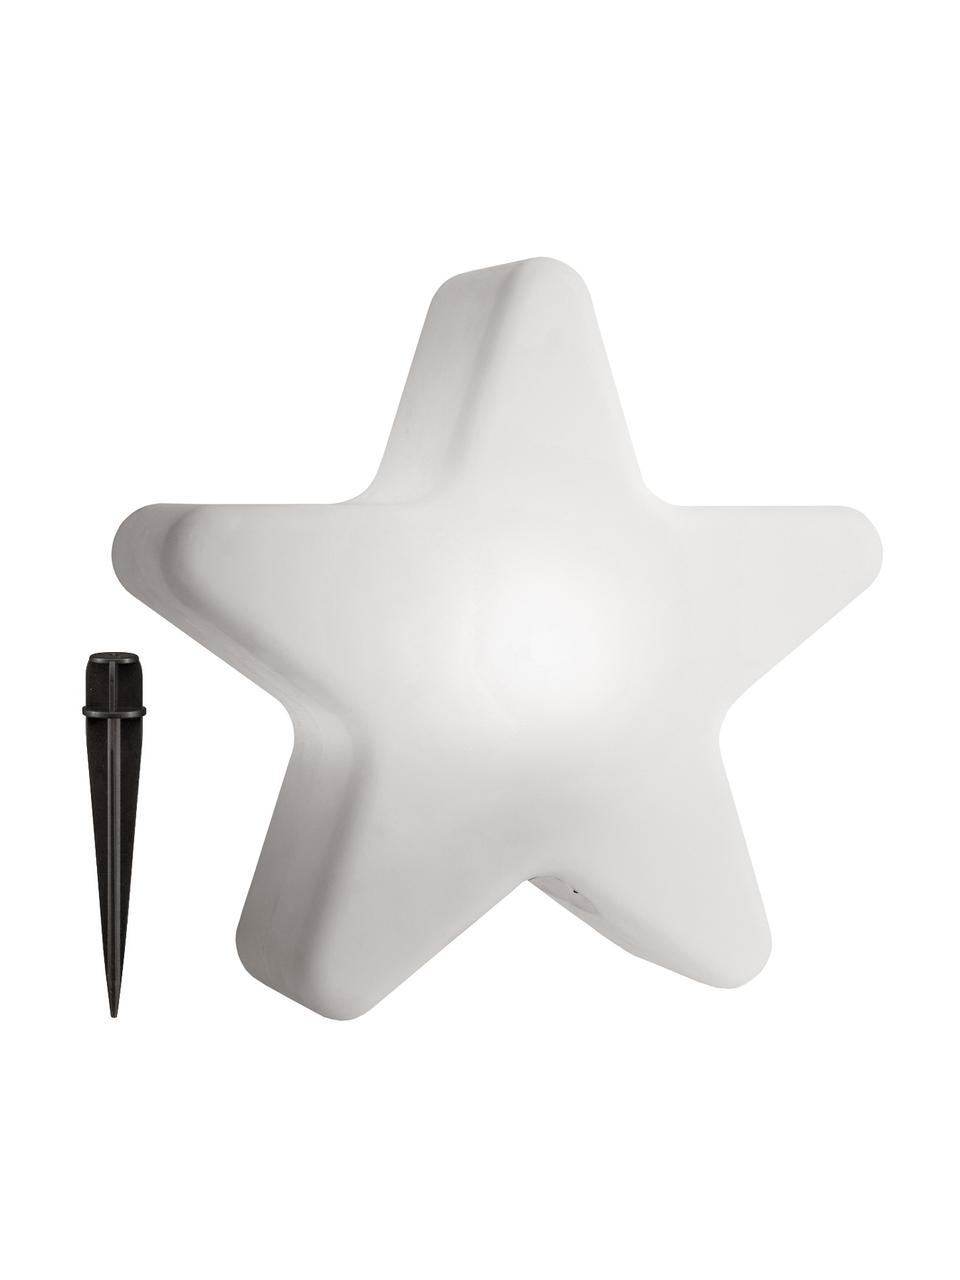 Bodenleuchte Star mit Stecker, Lampenschirm: Kunststoff, Weiß, 46 x 50 cm